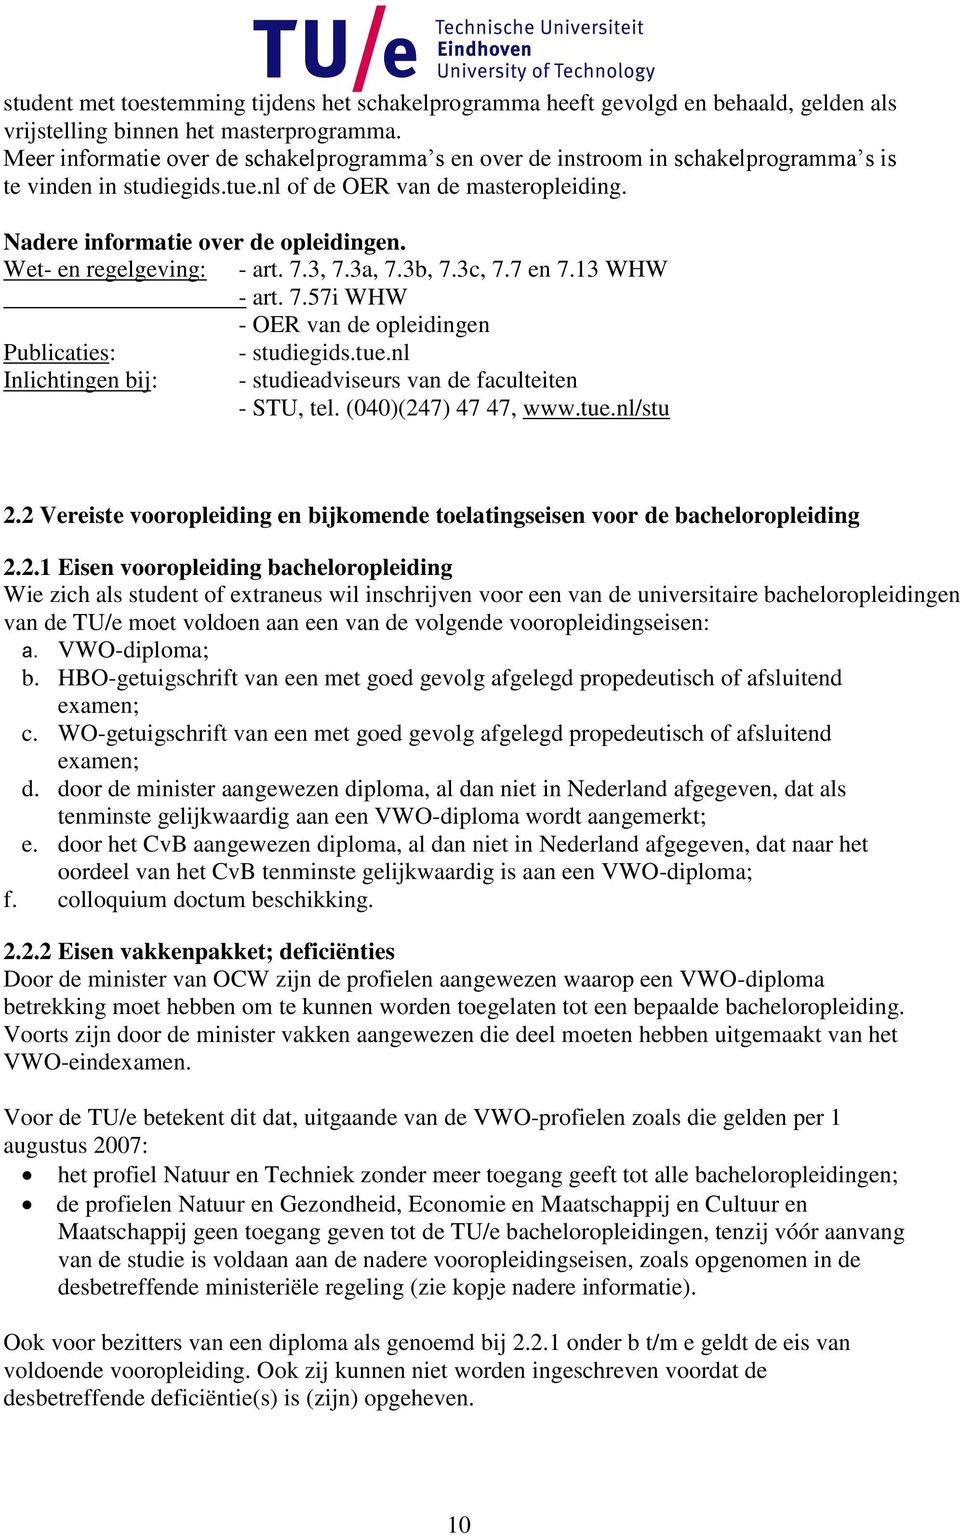 Wet- en regelgeving: - art. 7.3, 7.3a, 7.3b, 7.3c, 7.7 en 7.13 WHW - art. 7.57i WHW - OER van de opleidingen Publicaties: - studiegids.tue.